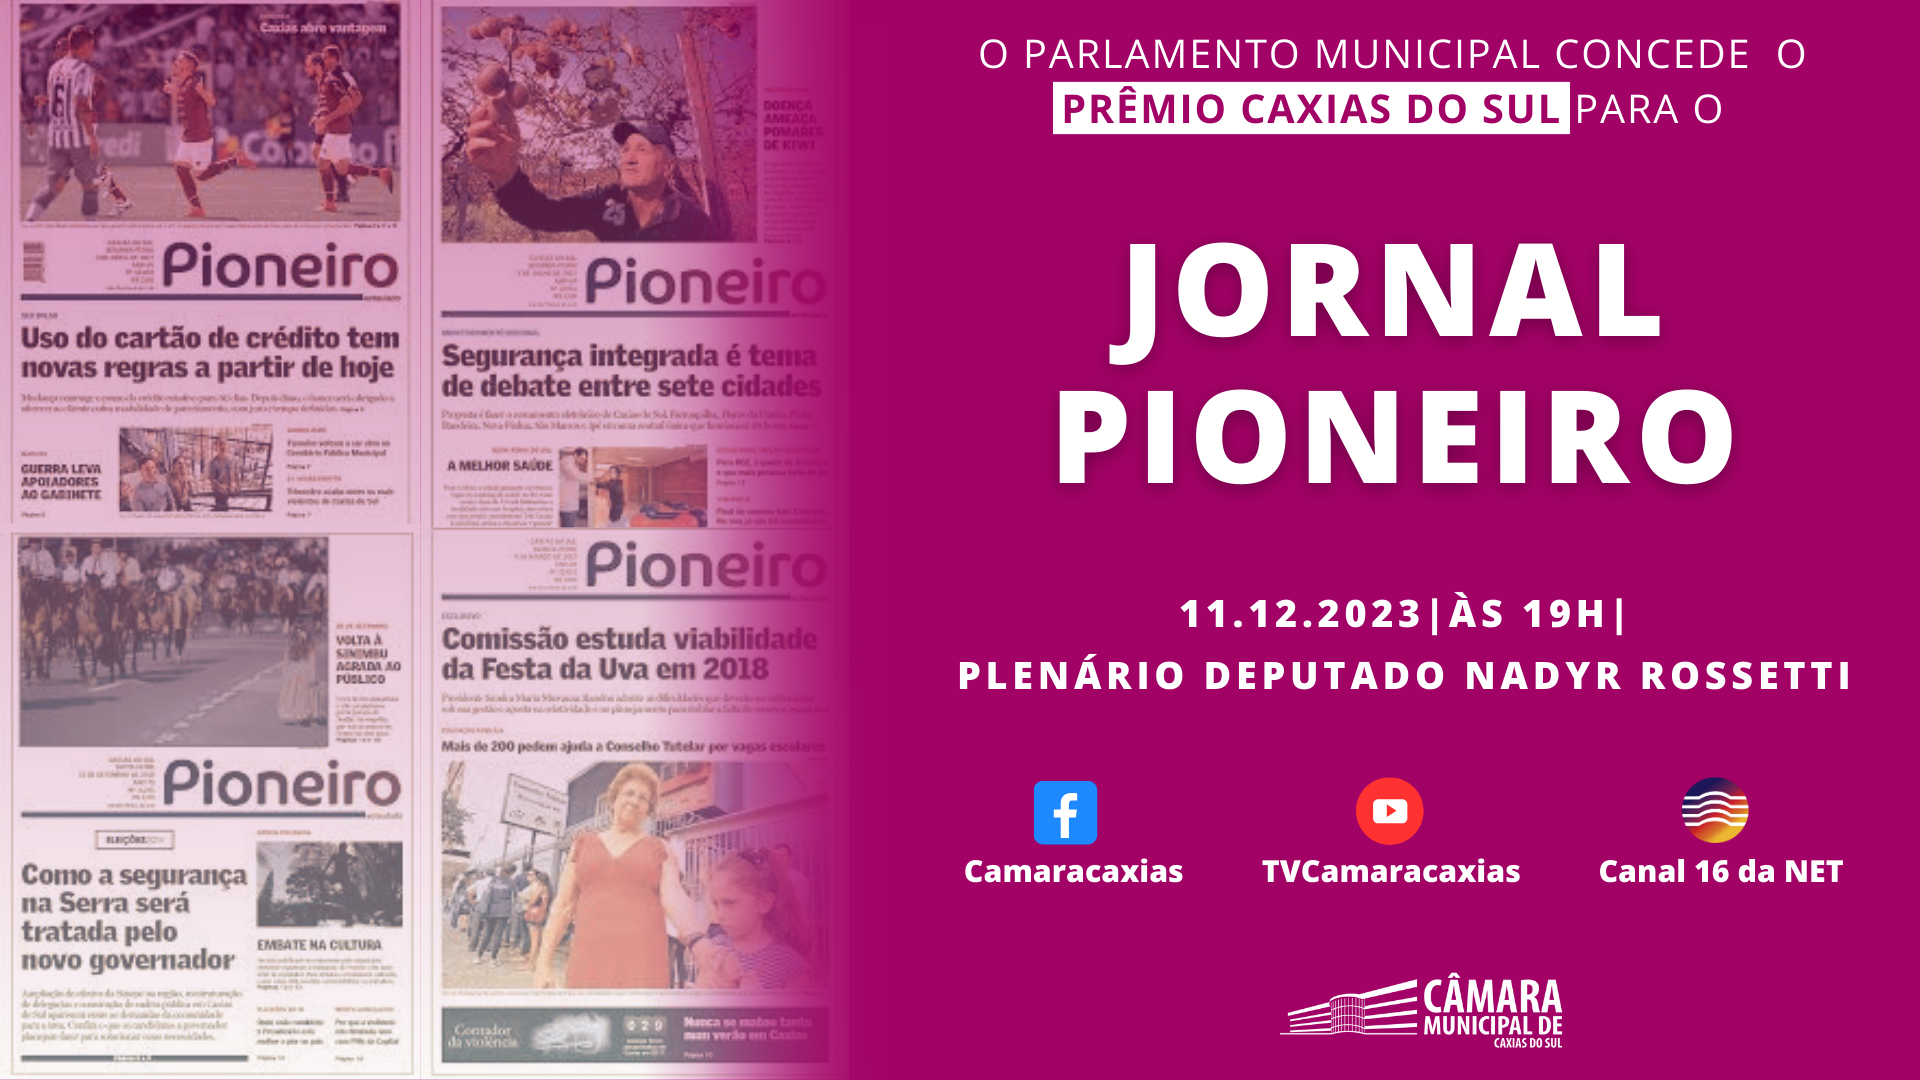 Leia mais sobre Jornal Pioneiro será agraciado com o Prêmio Caxias do Sul nesta segunda-feira